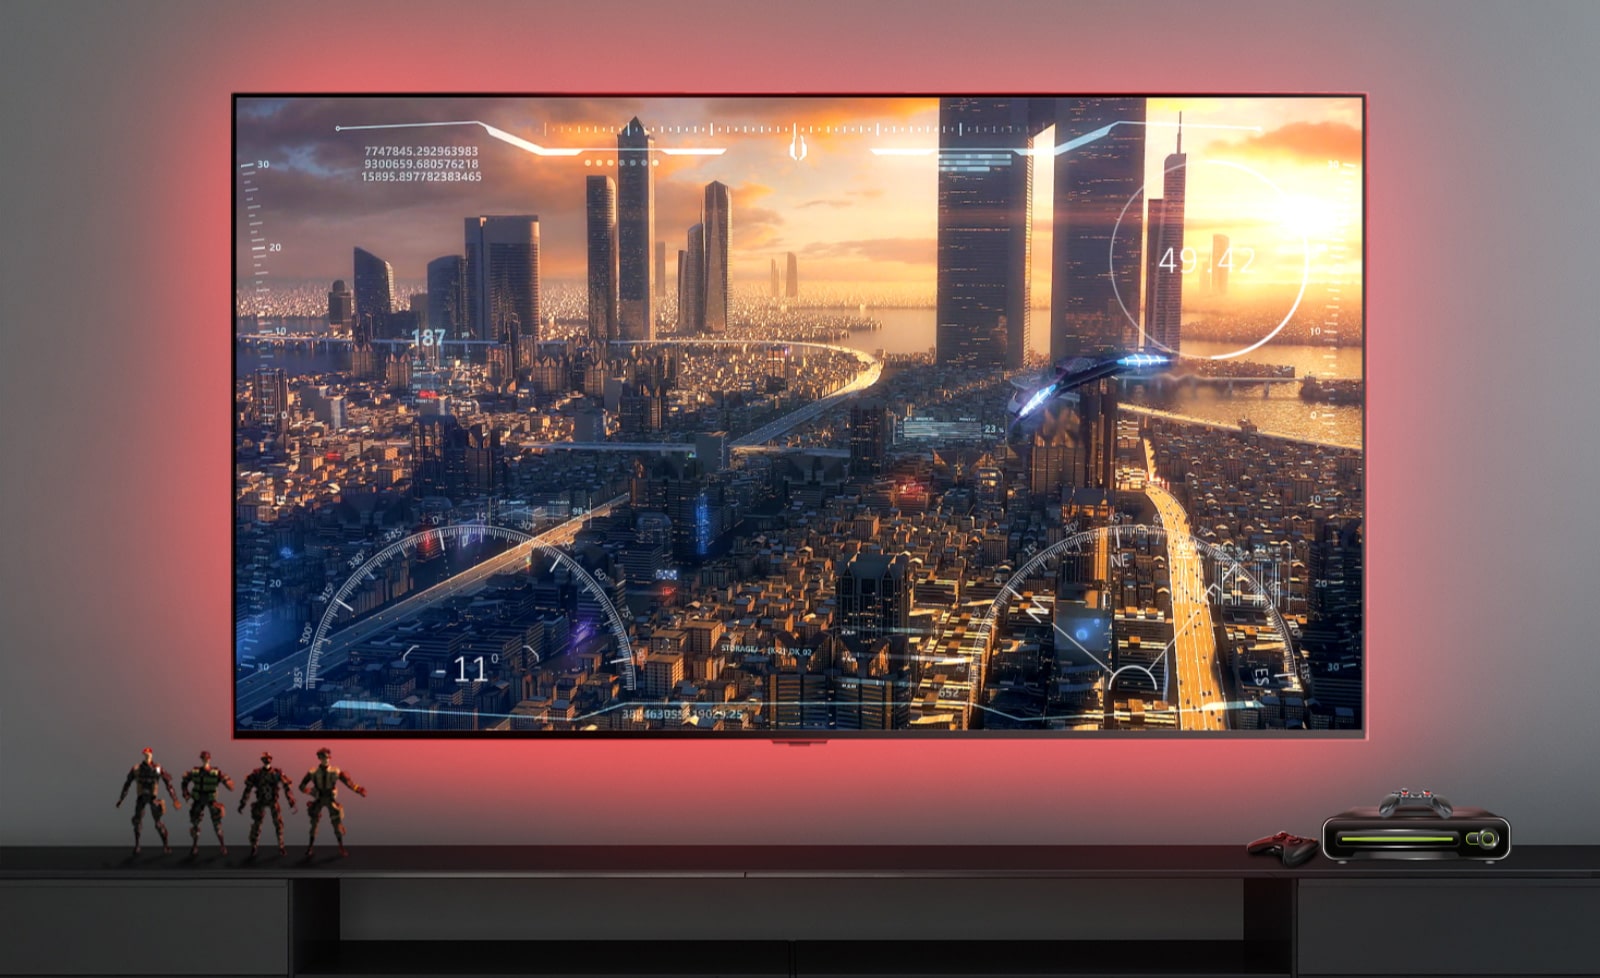 Une scène de jeux vidéo montrant un vaisseau volant au dessus d'une ville, sur un écran TV